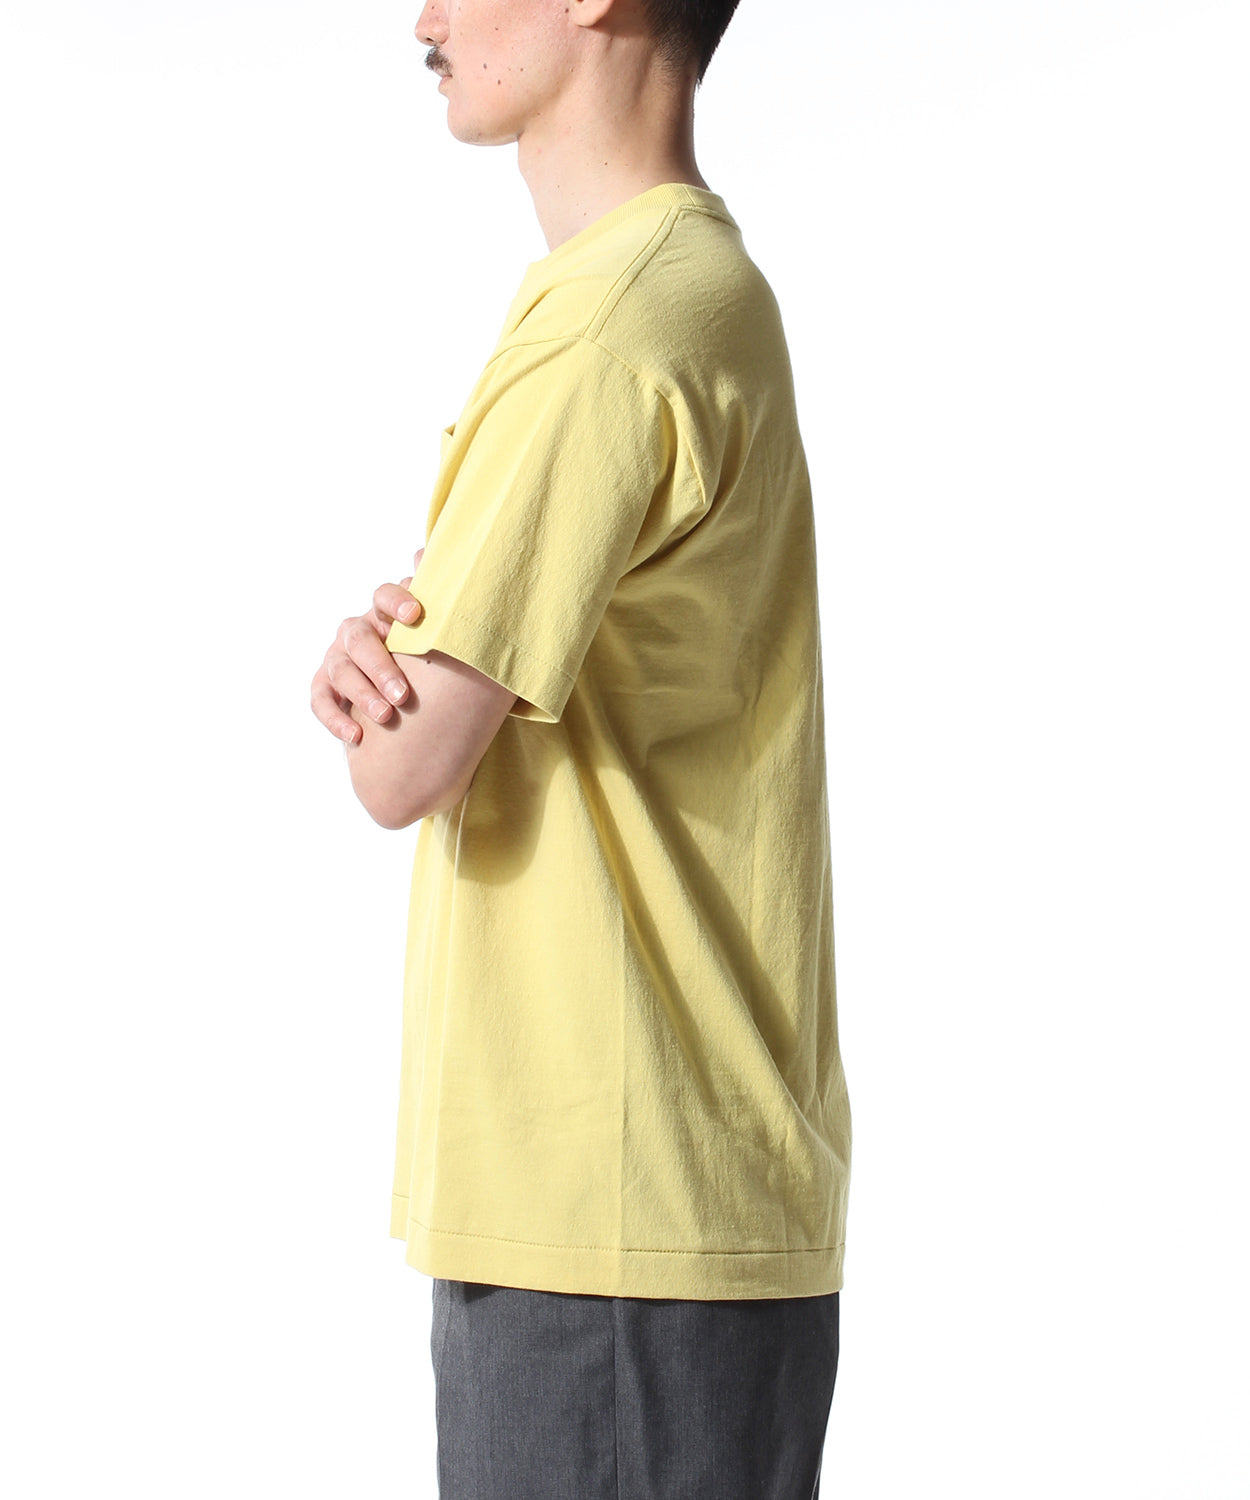 [35 лет] оригинальная карманная футболка / желтый